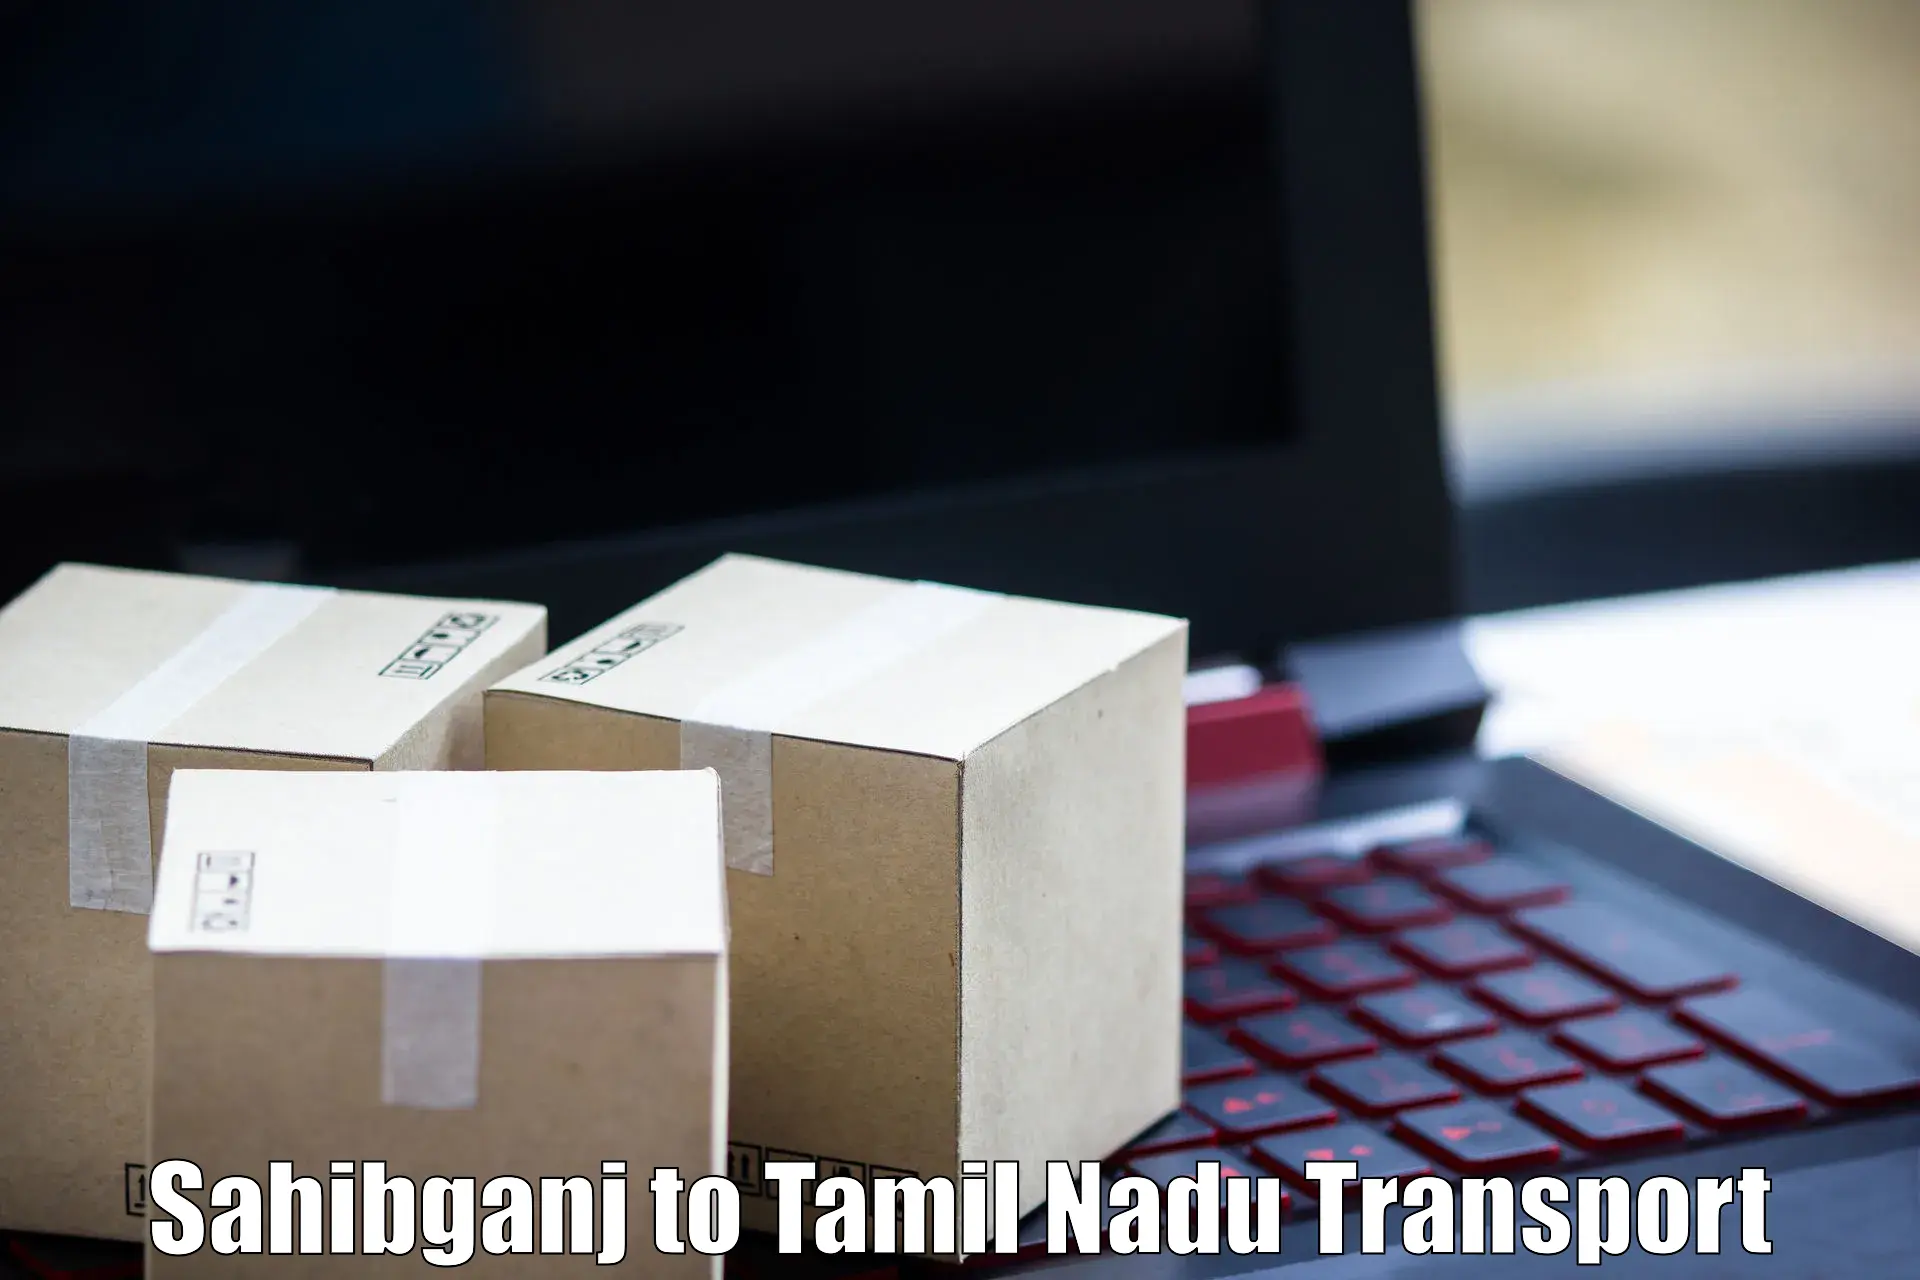 Shipping partner Sahibganj to Tindivanam